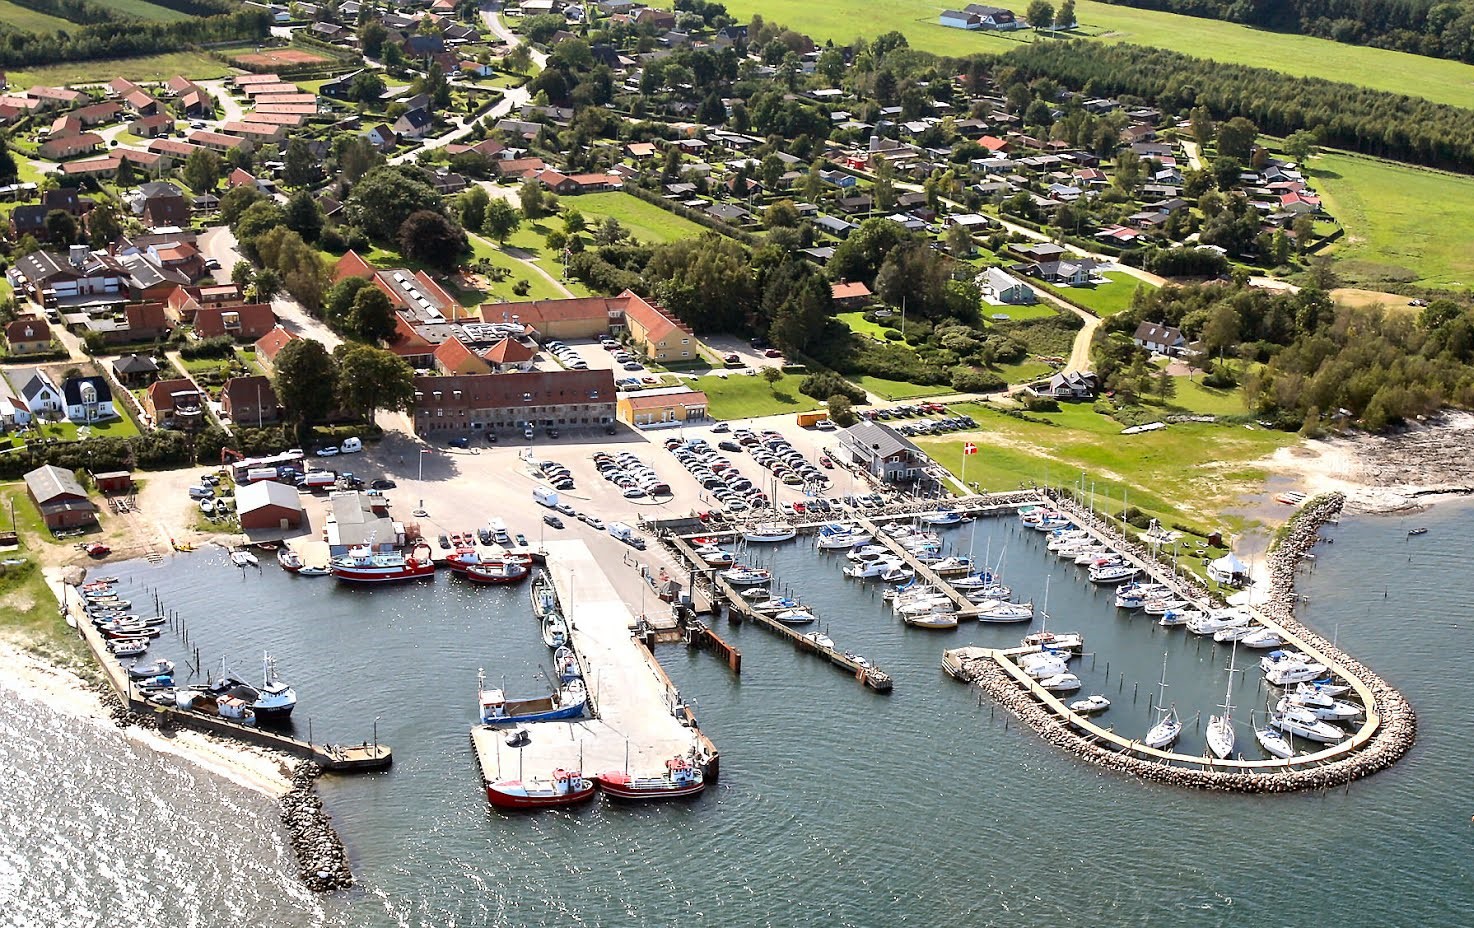 Det var her i Snaptun Lystbådehavn, at to sejlere foretog en civil anholdelse. Foto: visitjuelsminde.dk